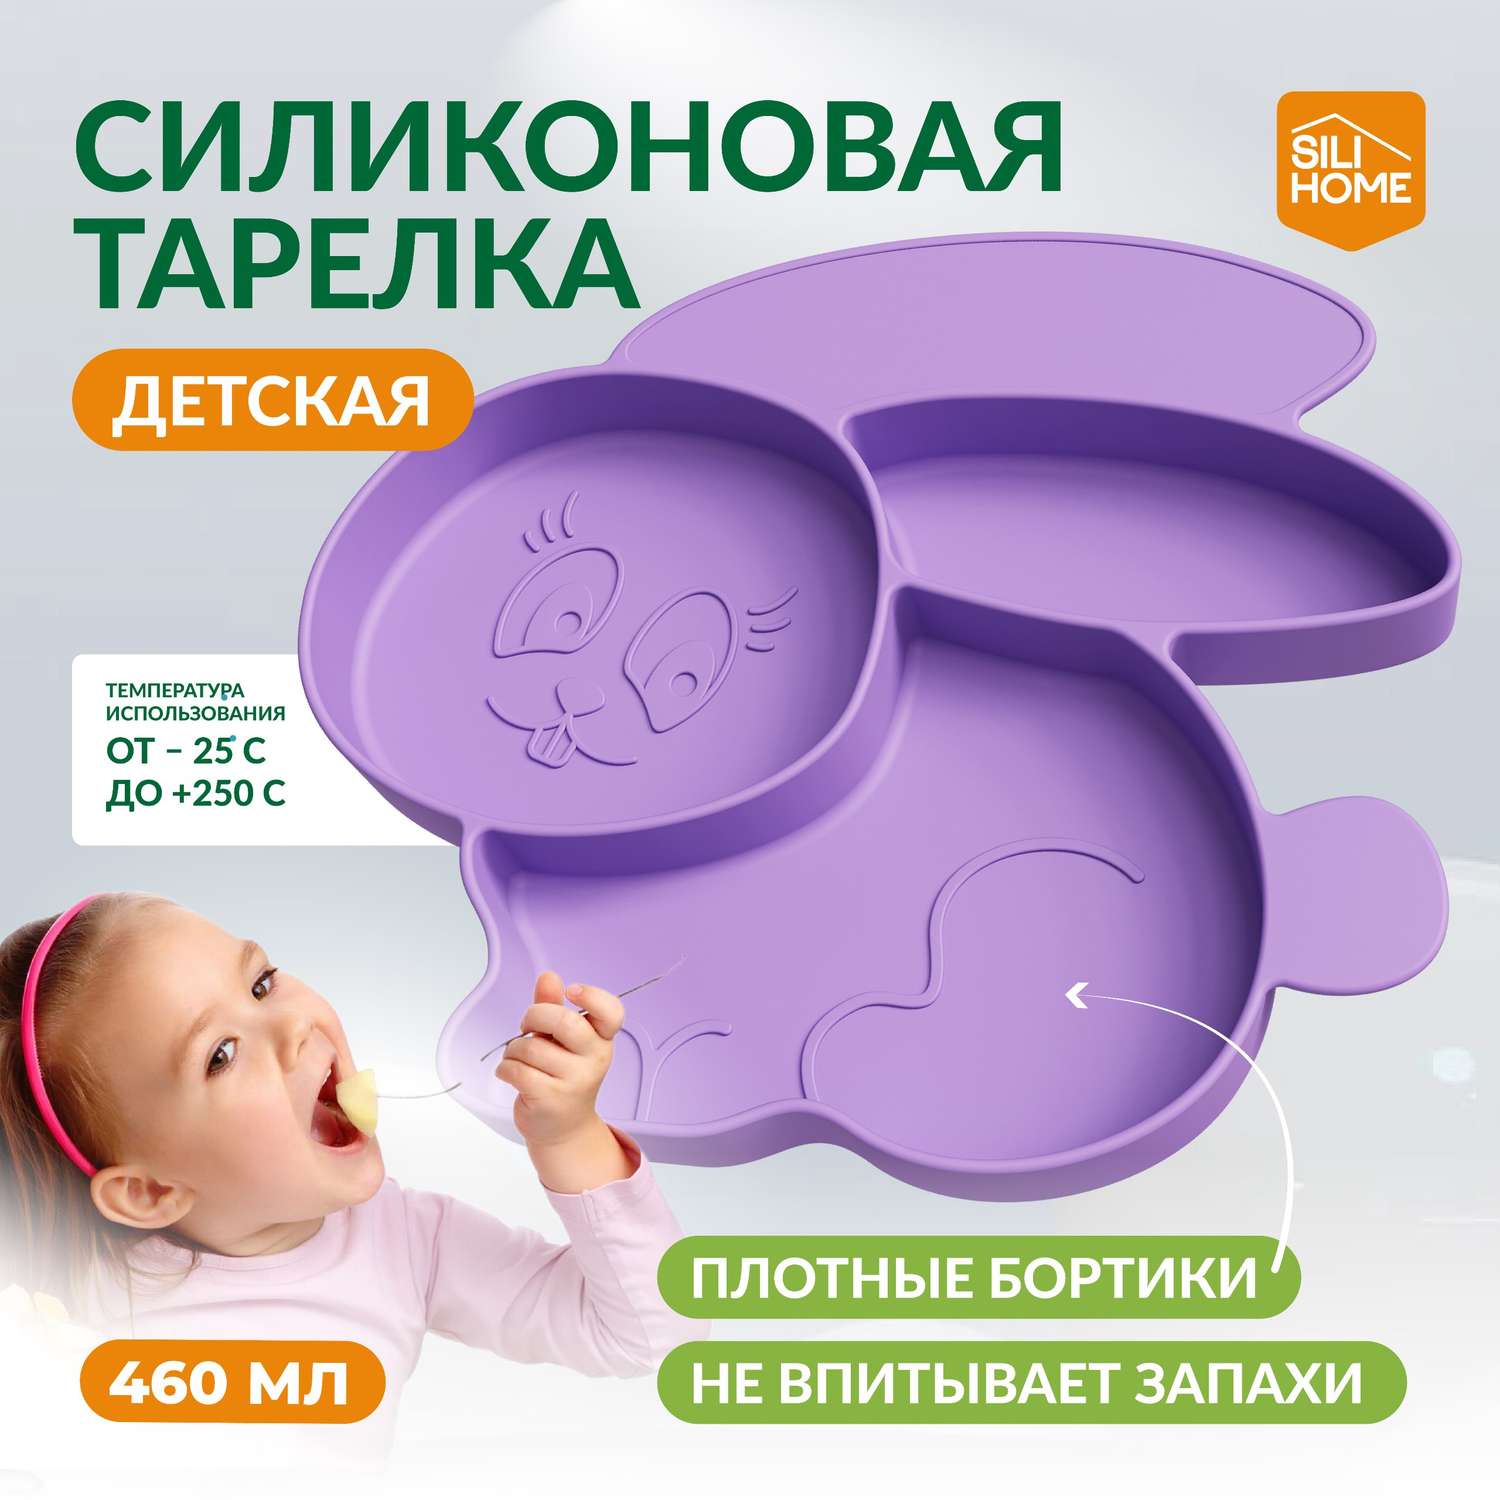 Детская силиконовая тарелка SILIHOME Зайка 460 мл секционная - фото 1